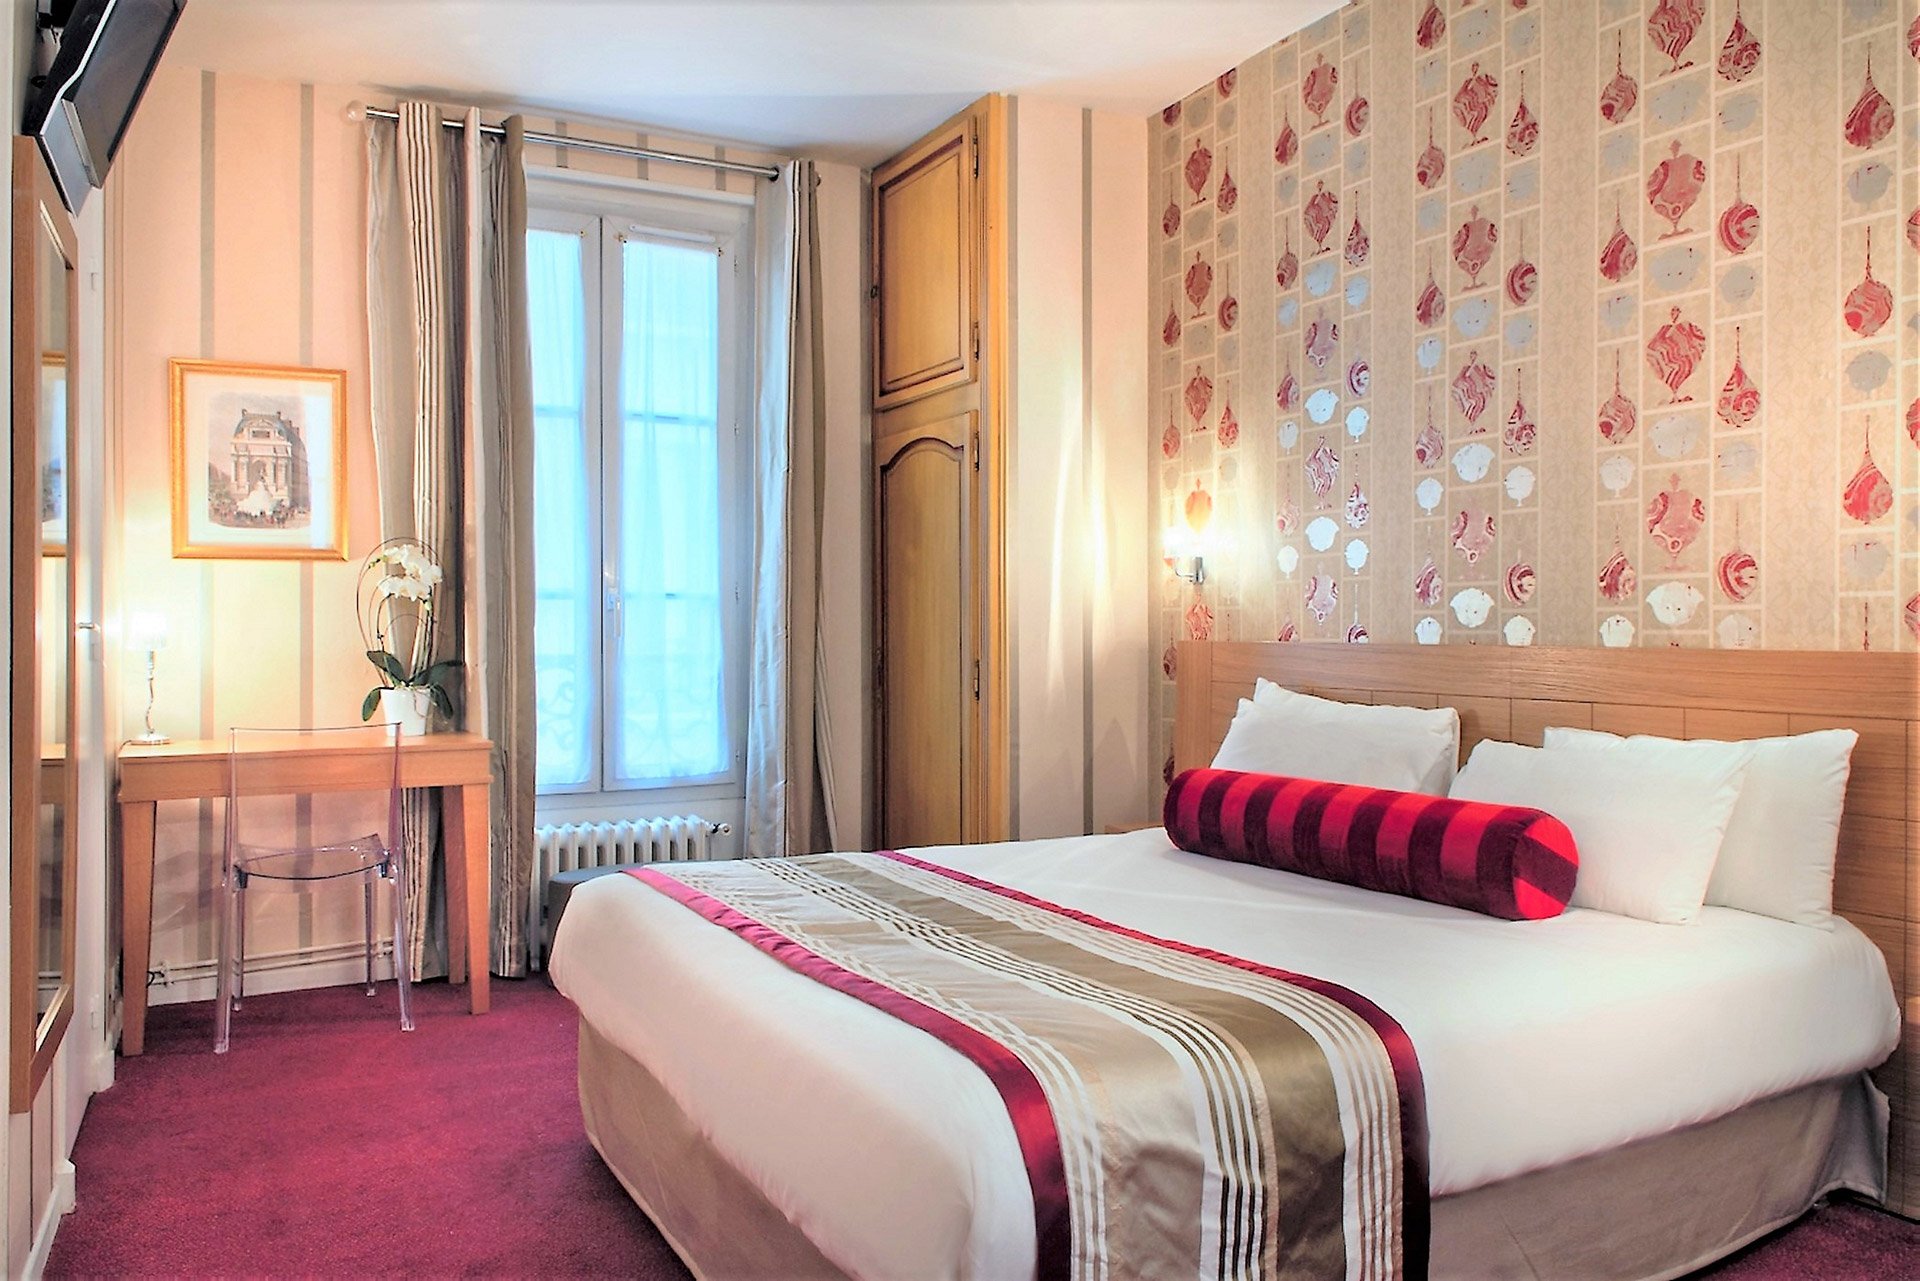 172/Photos/Romance/Hotel-Romance-Paris-Chambre-Double.jpg